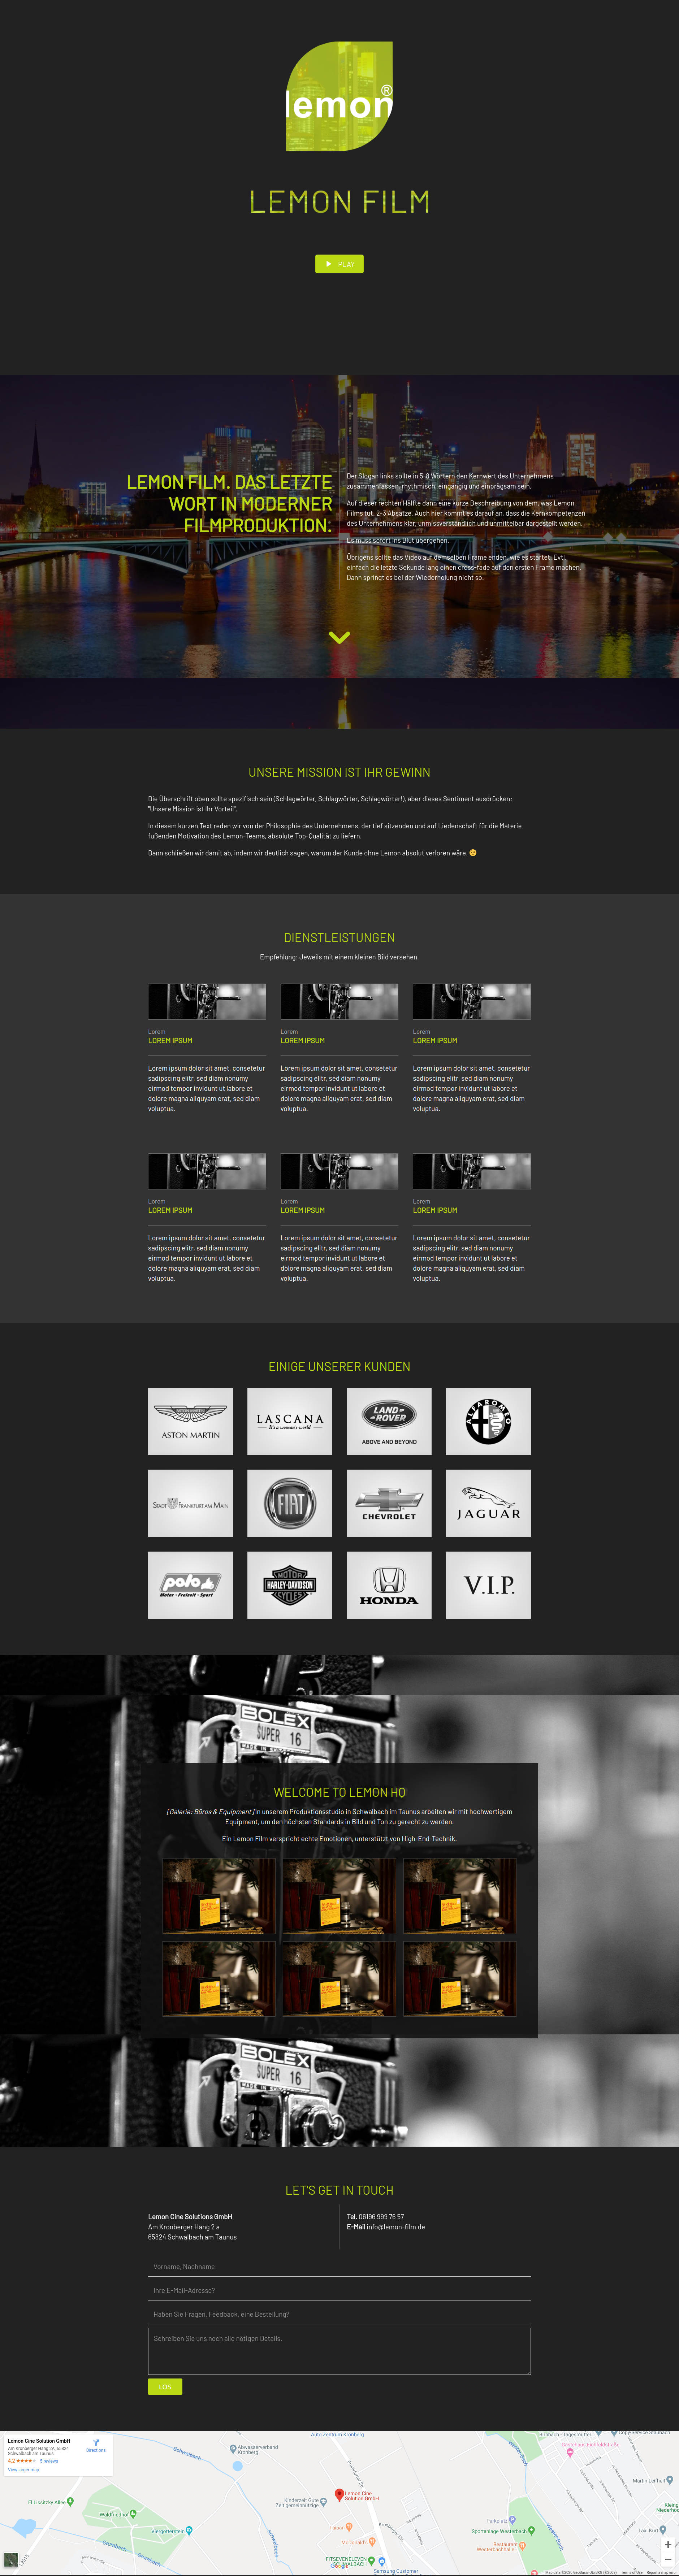 Website Showcase: Lemon Film · Draft | Brand Artery